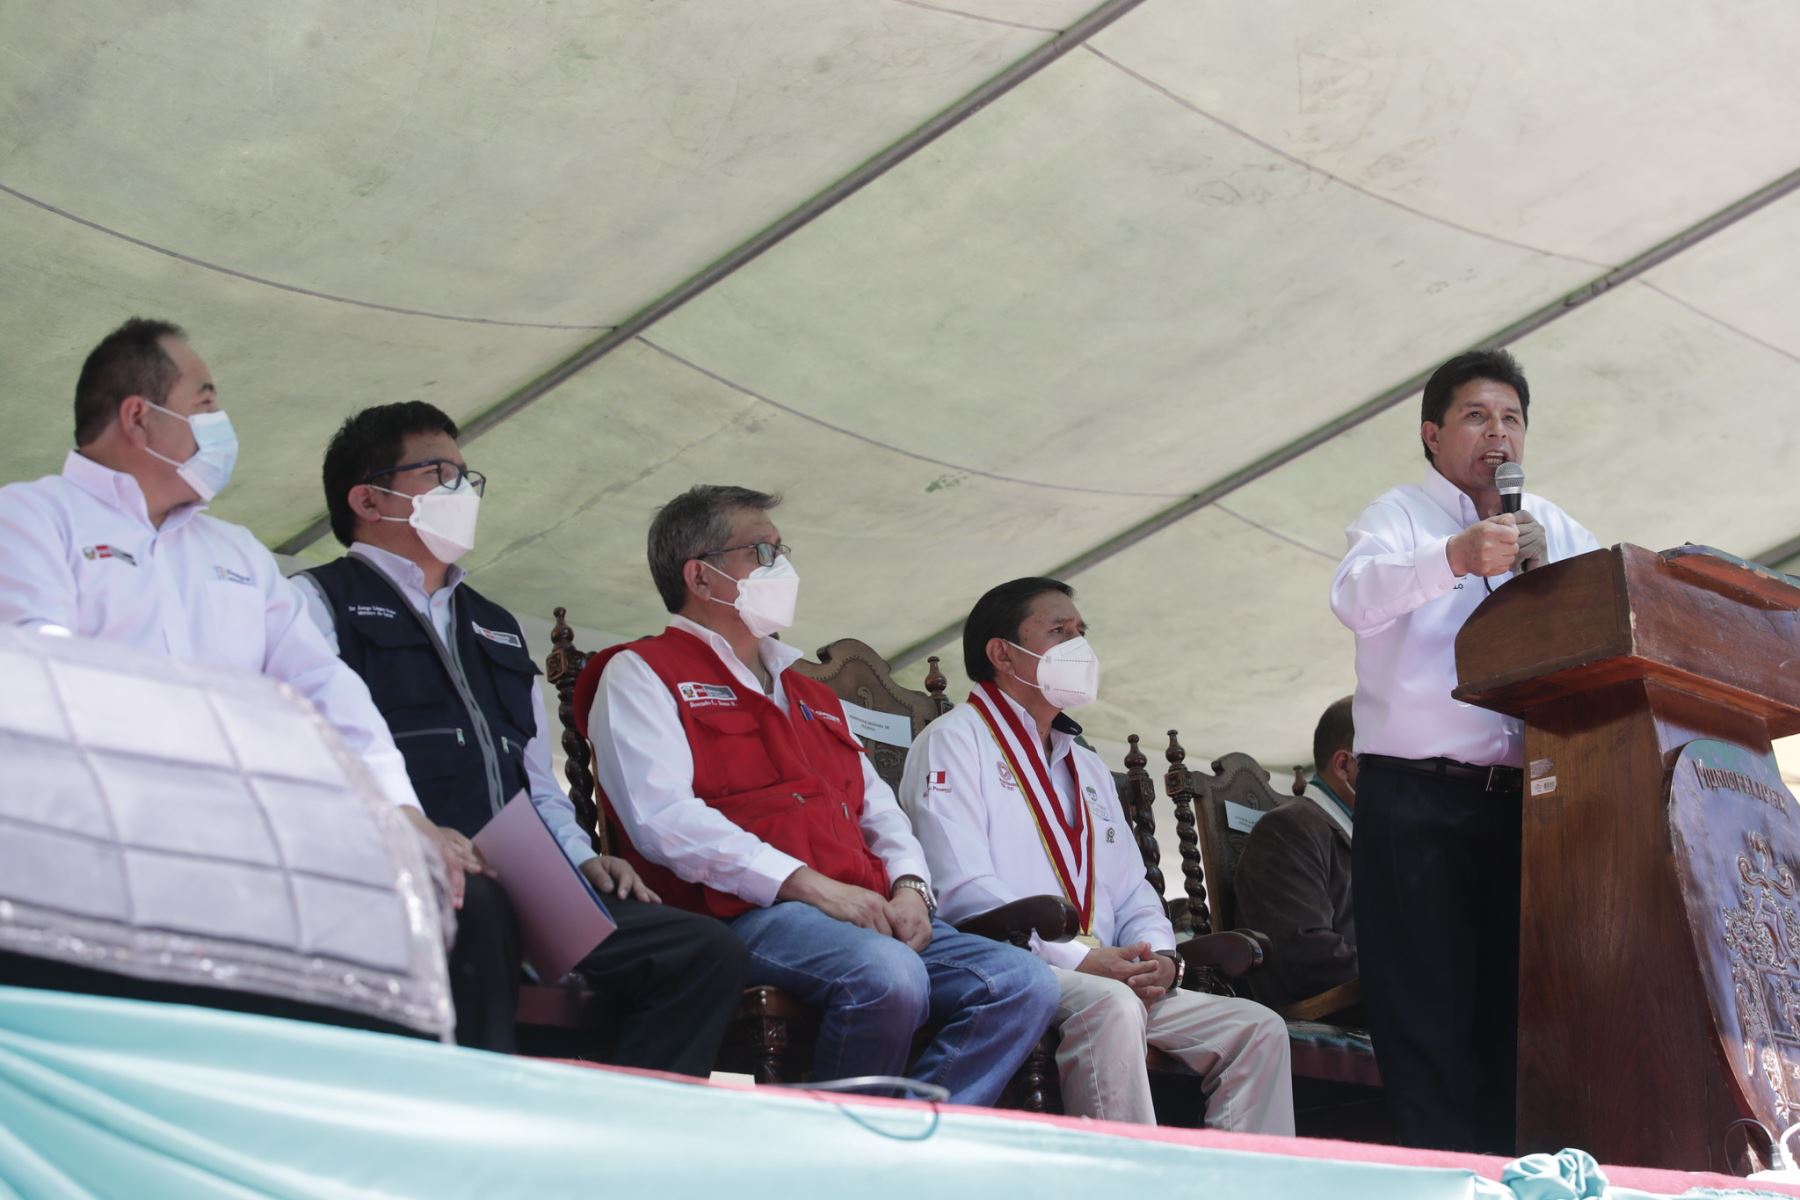 Presidente de la República, Pedro Castillo lidera ceremonia por el 483° aniversario de la fundación de la ciudad de Huánuco.
Foto: ANDINA/Prensa Presidencia